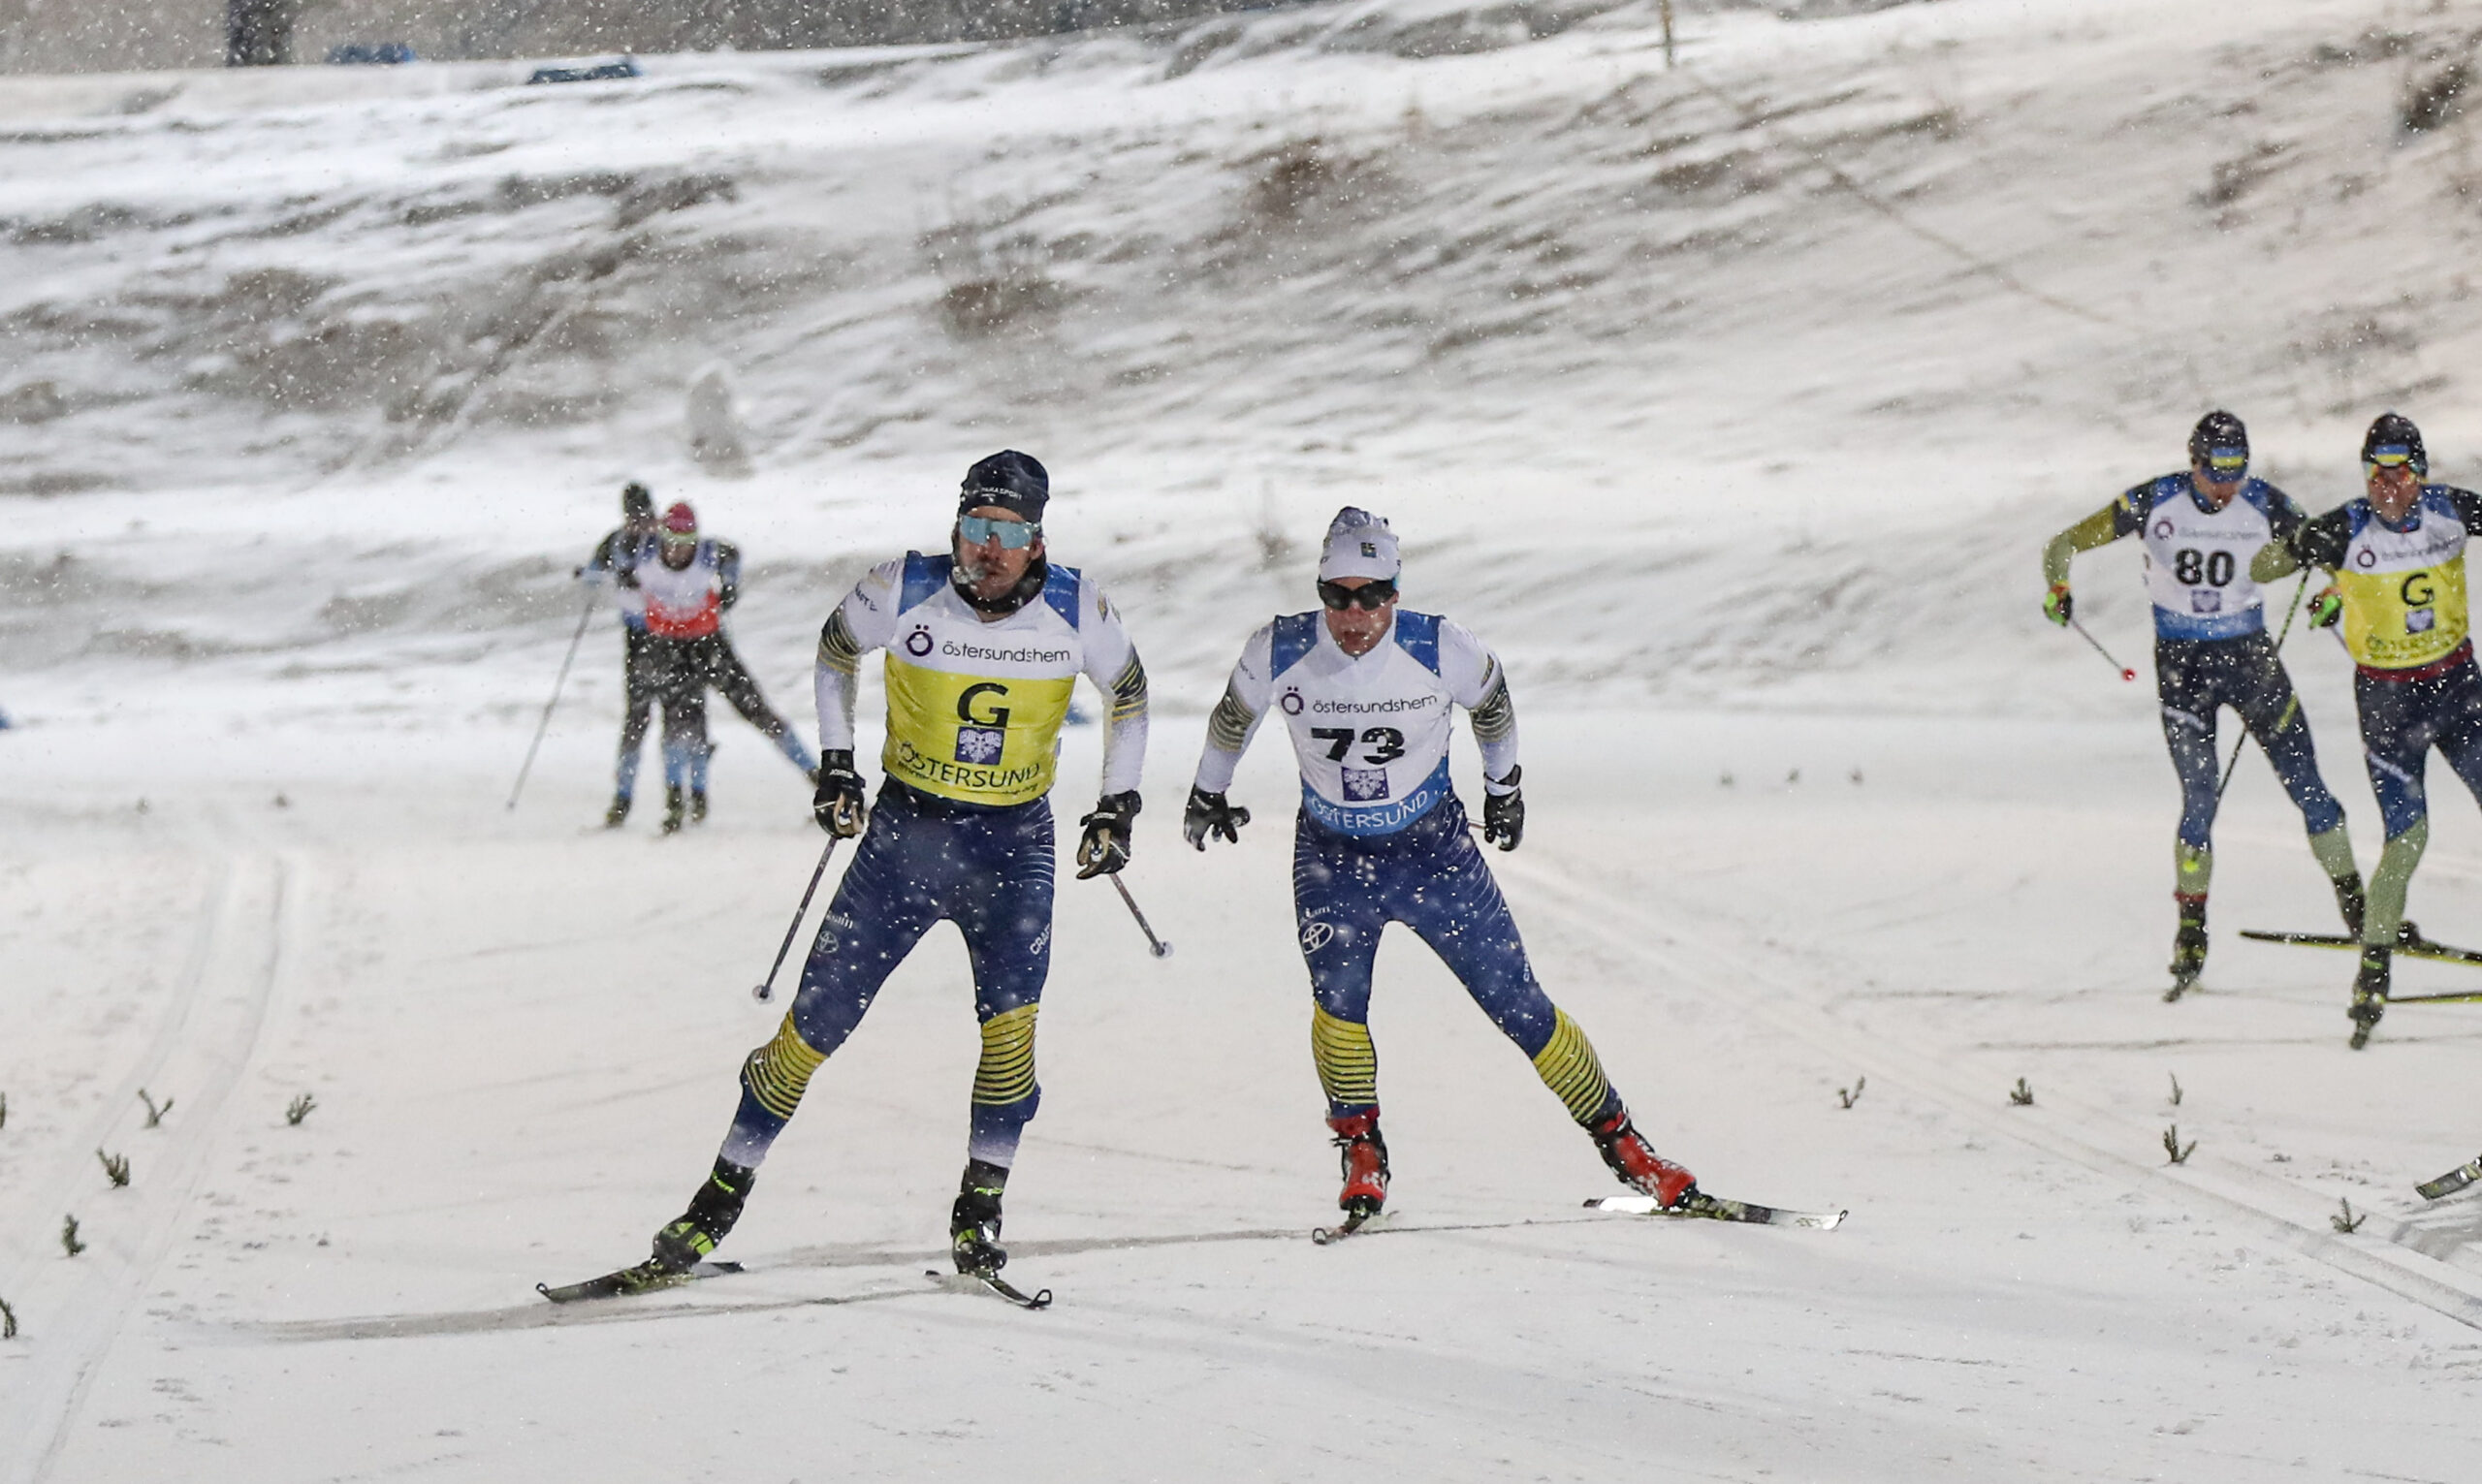 Zebastian och guiden sprintar mot mål i svenska landslagsdräkten